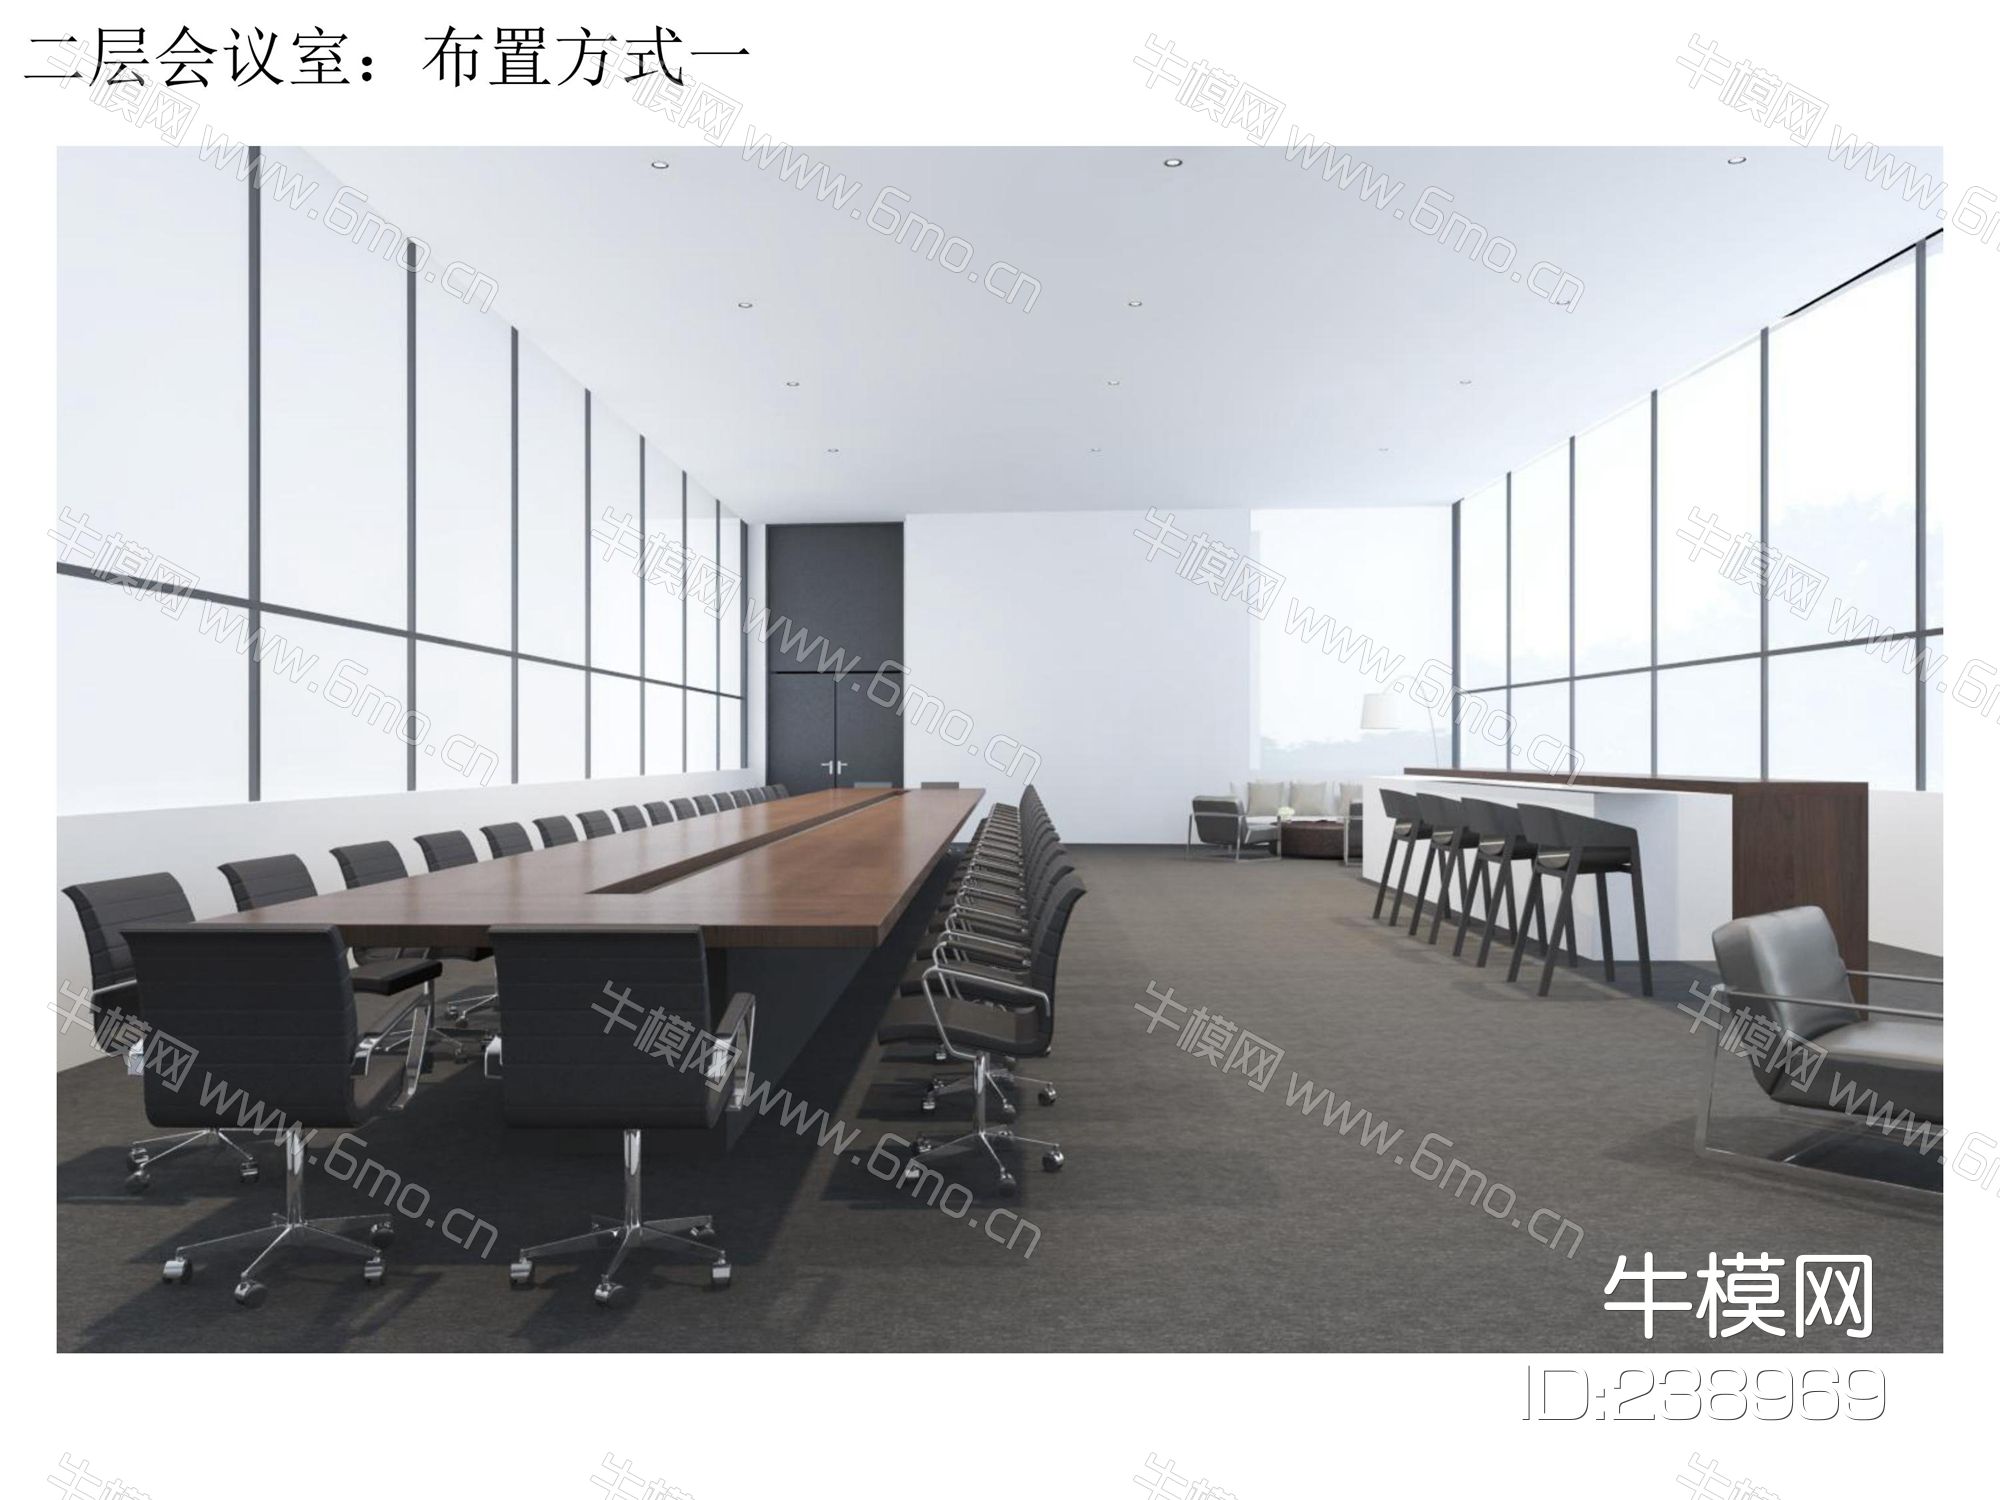 上海美术馆公区CAD施工图效果图物料表实景图